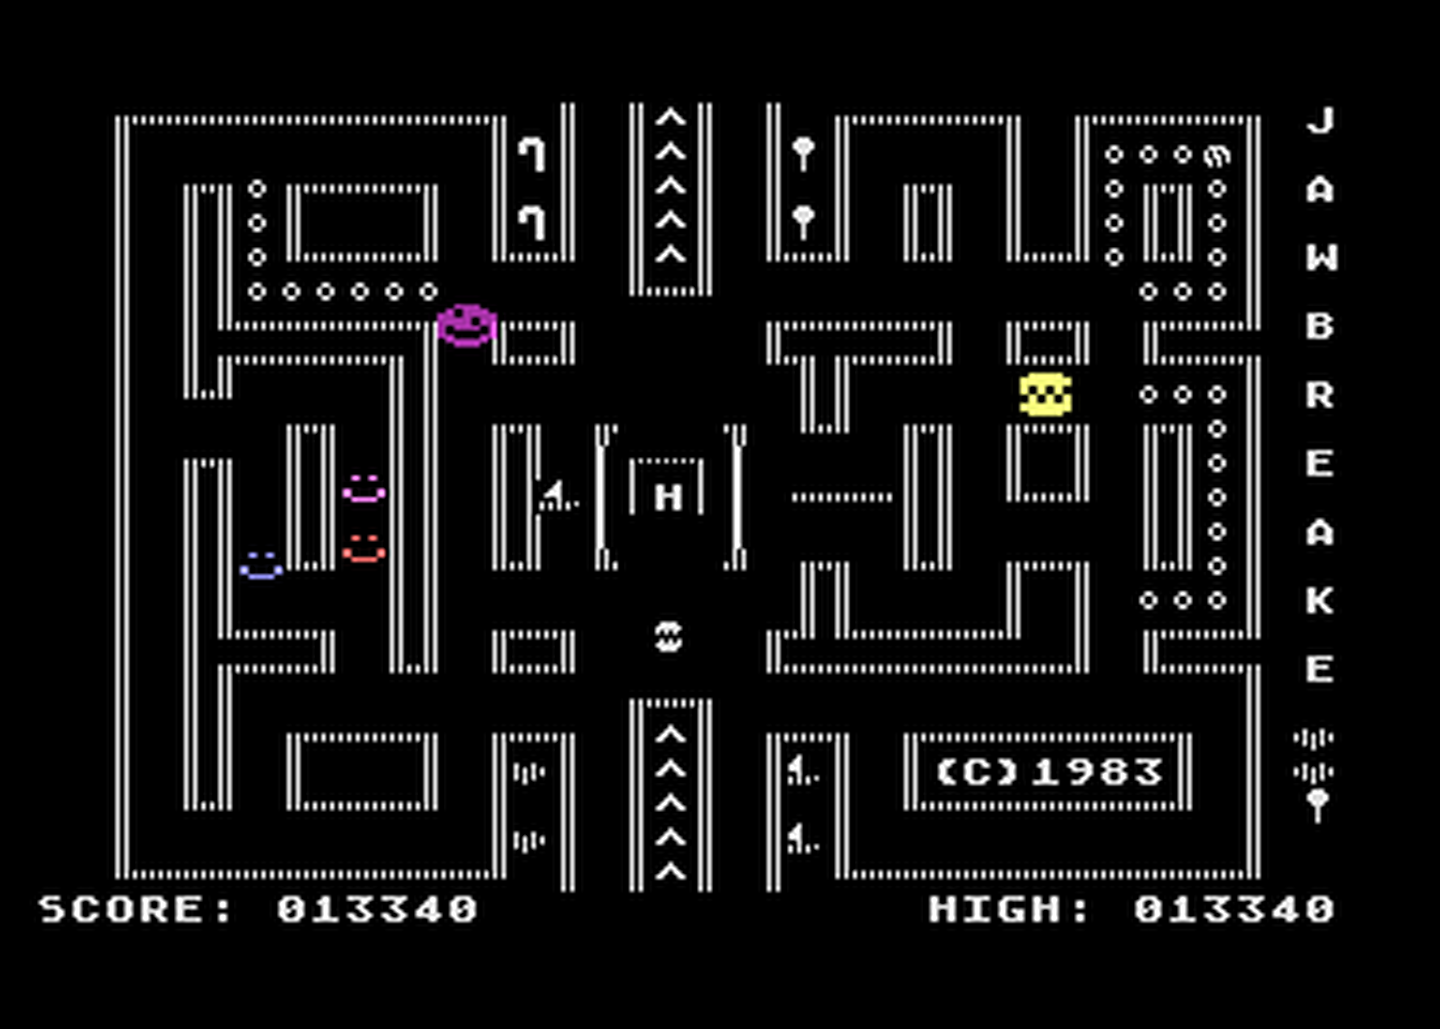 Atari GameBase Jawbreaker_4 (No_Publisher) 1983